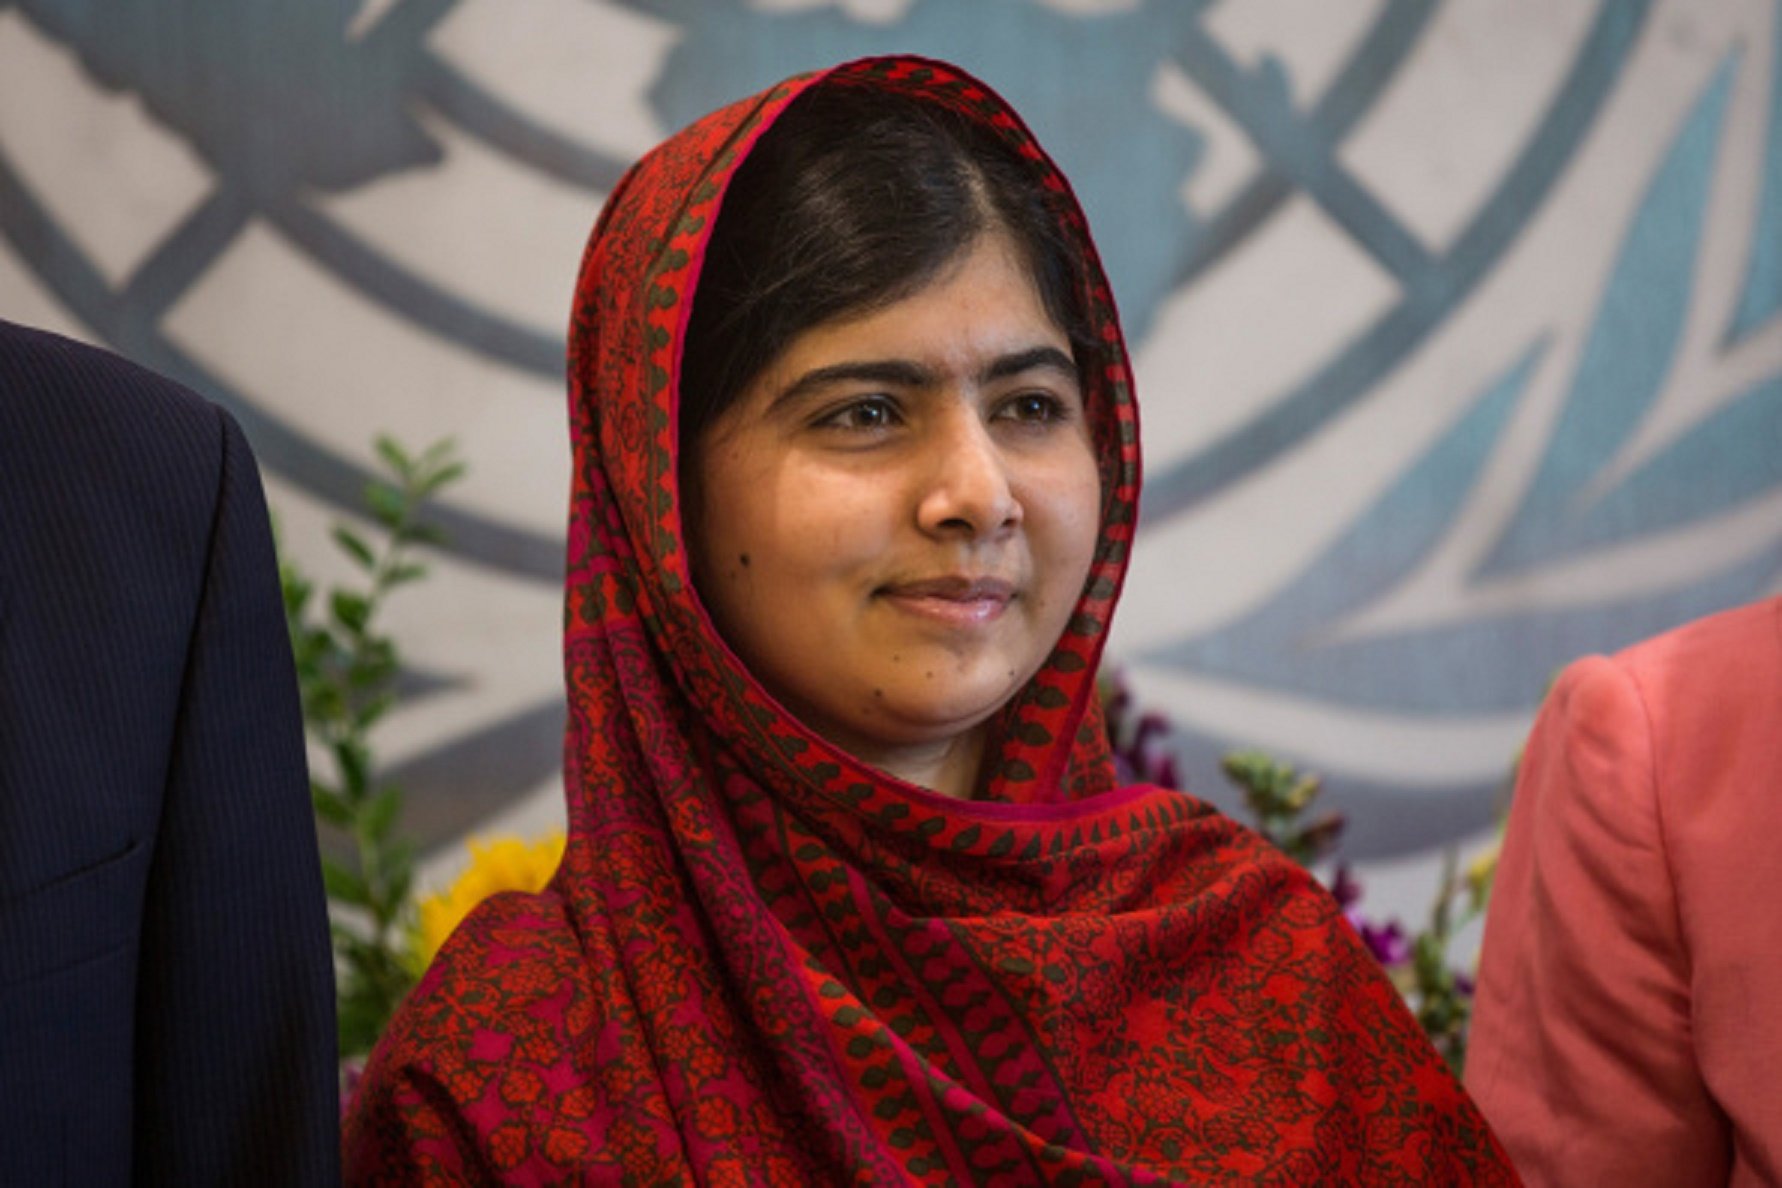 Malala yousafzai, fate studiare le ragazze di tutto il mondo!